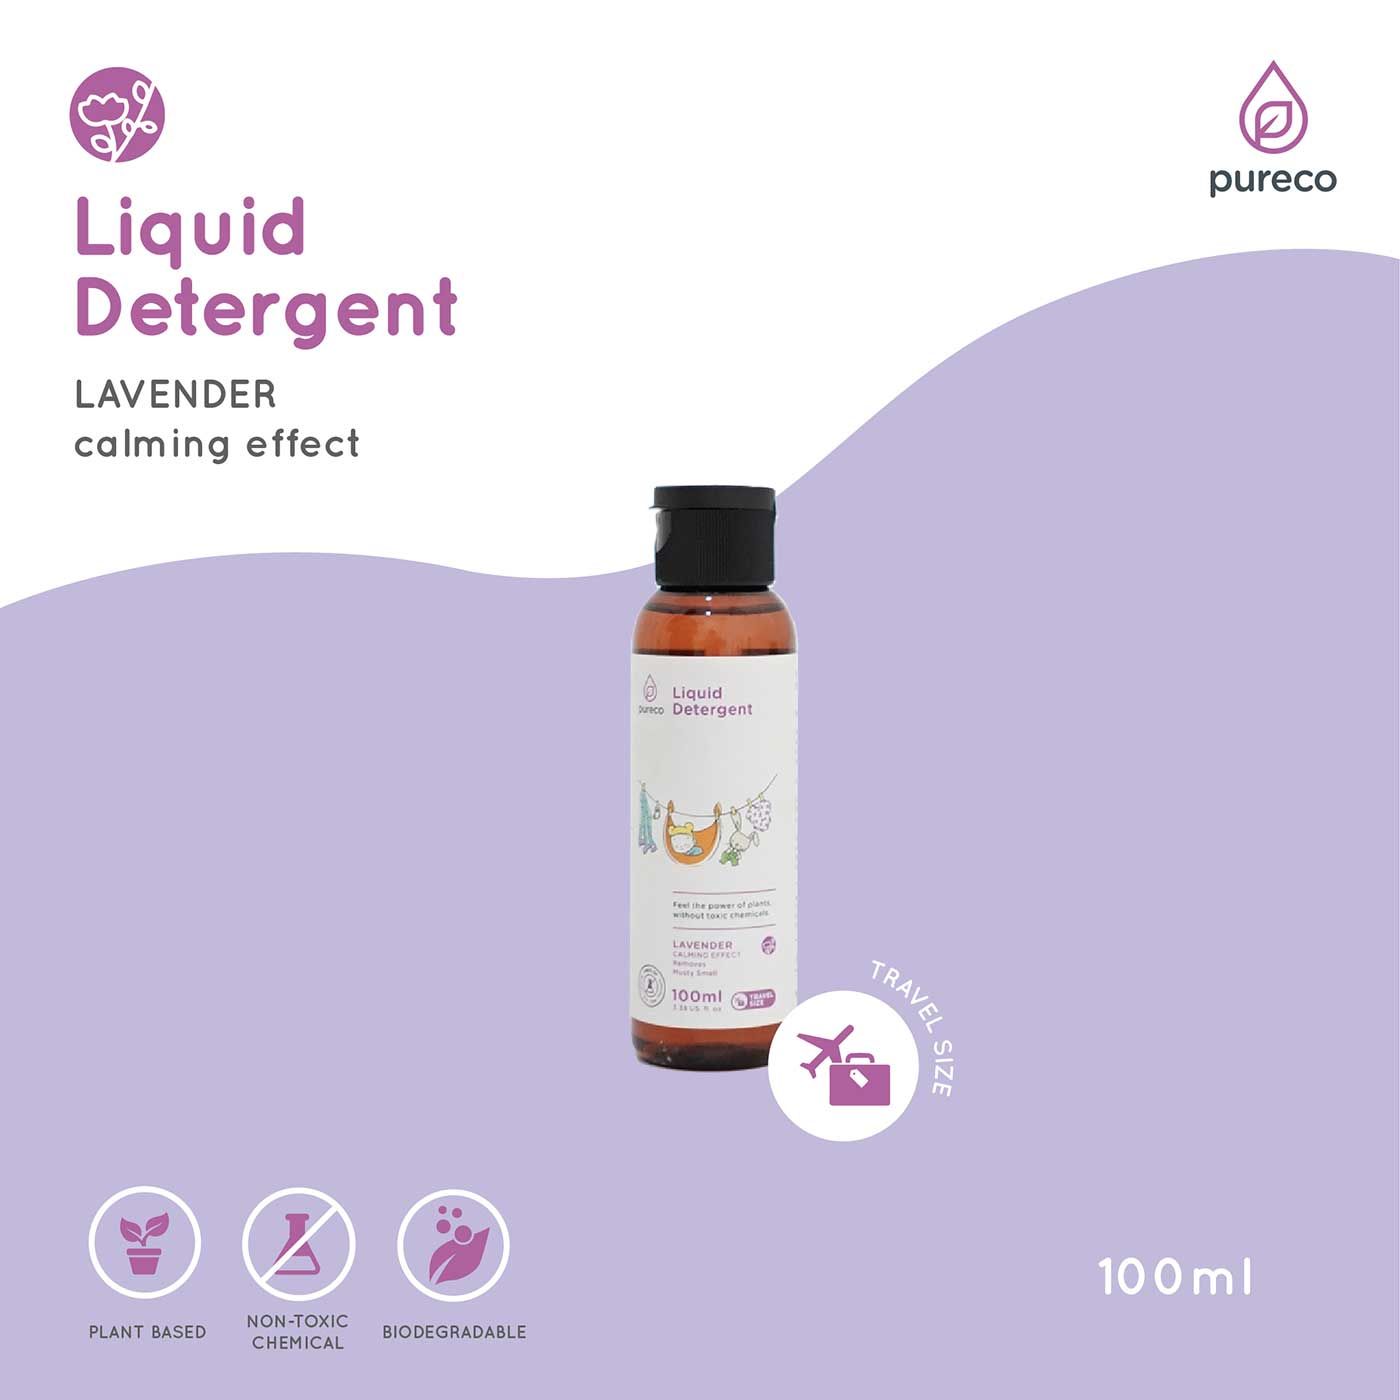 Pureco Travel Liquid Detergent 100ml - 2